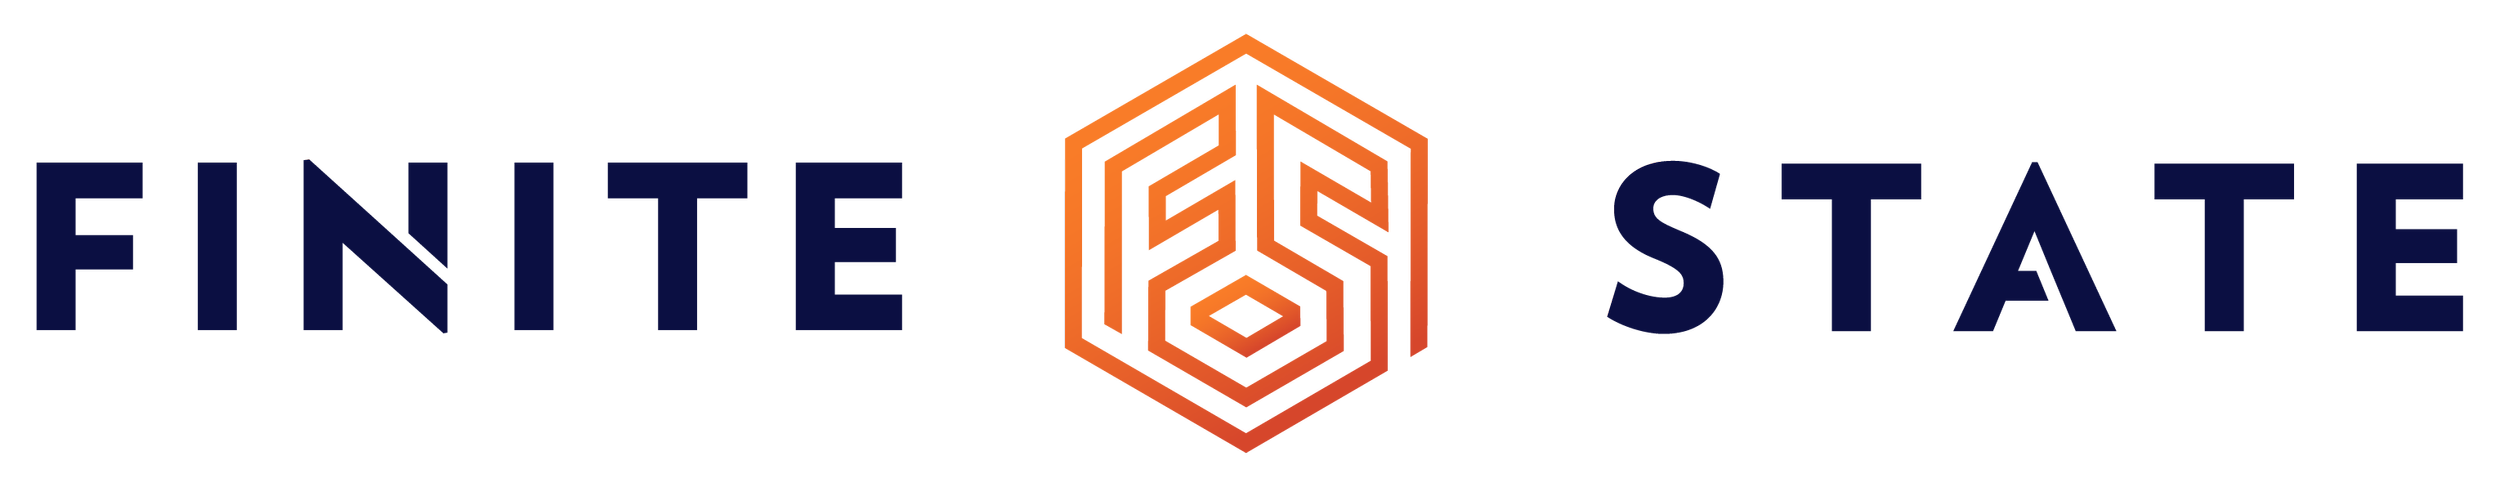 FS-Logo-Final-01.png